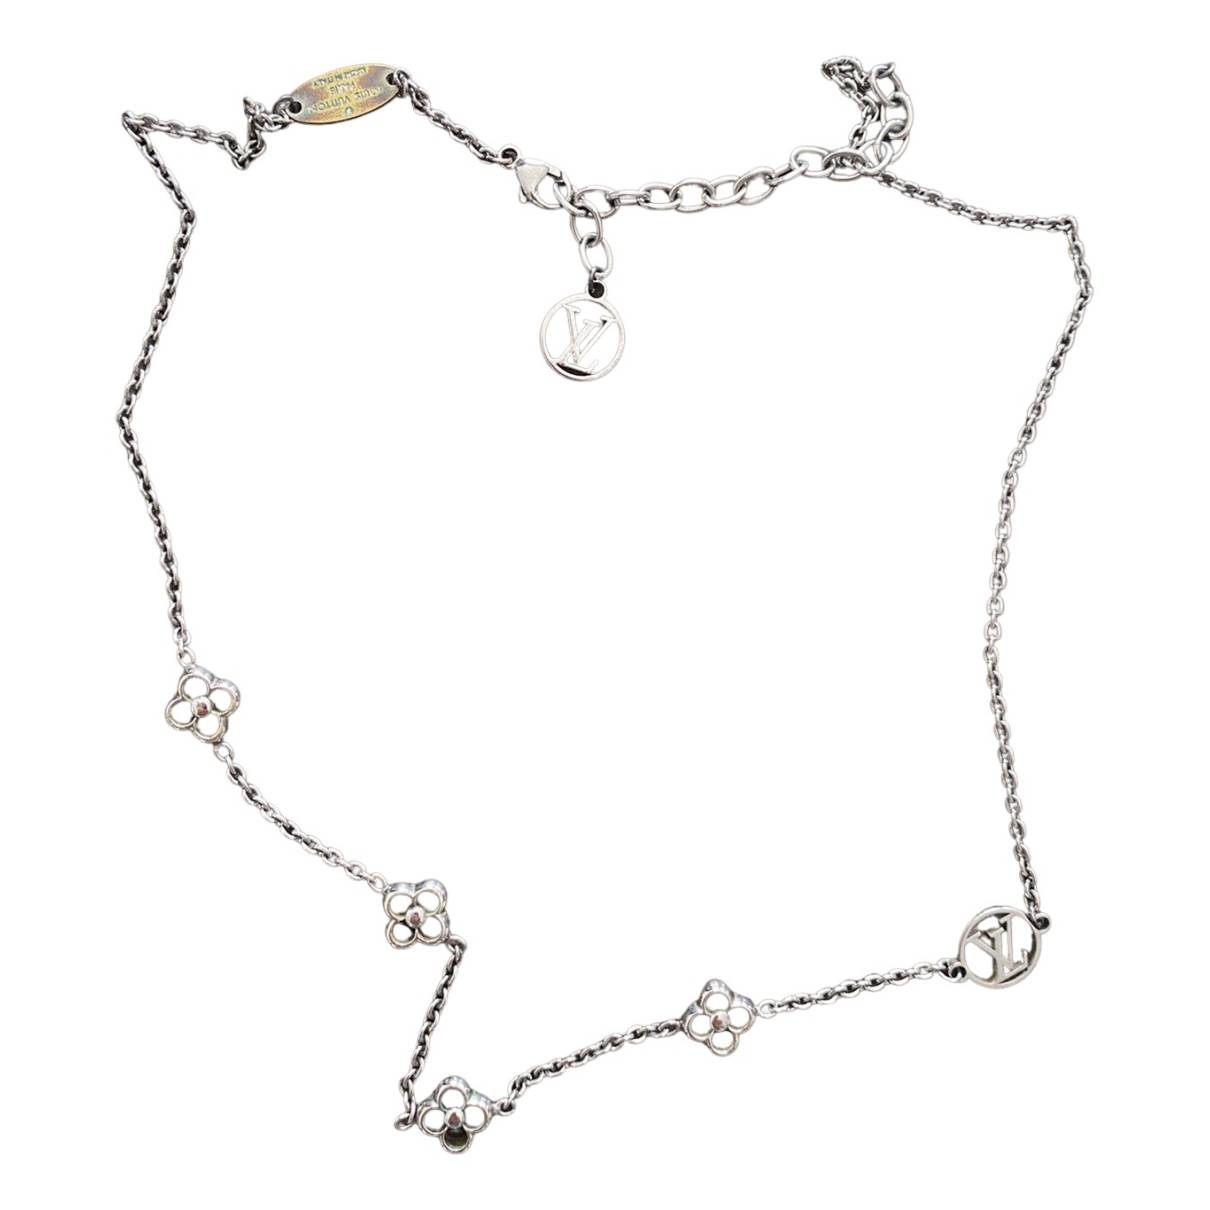 Louis Vuitton flower necklaces